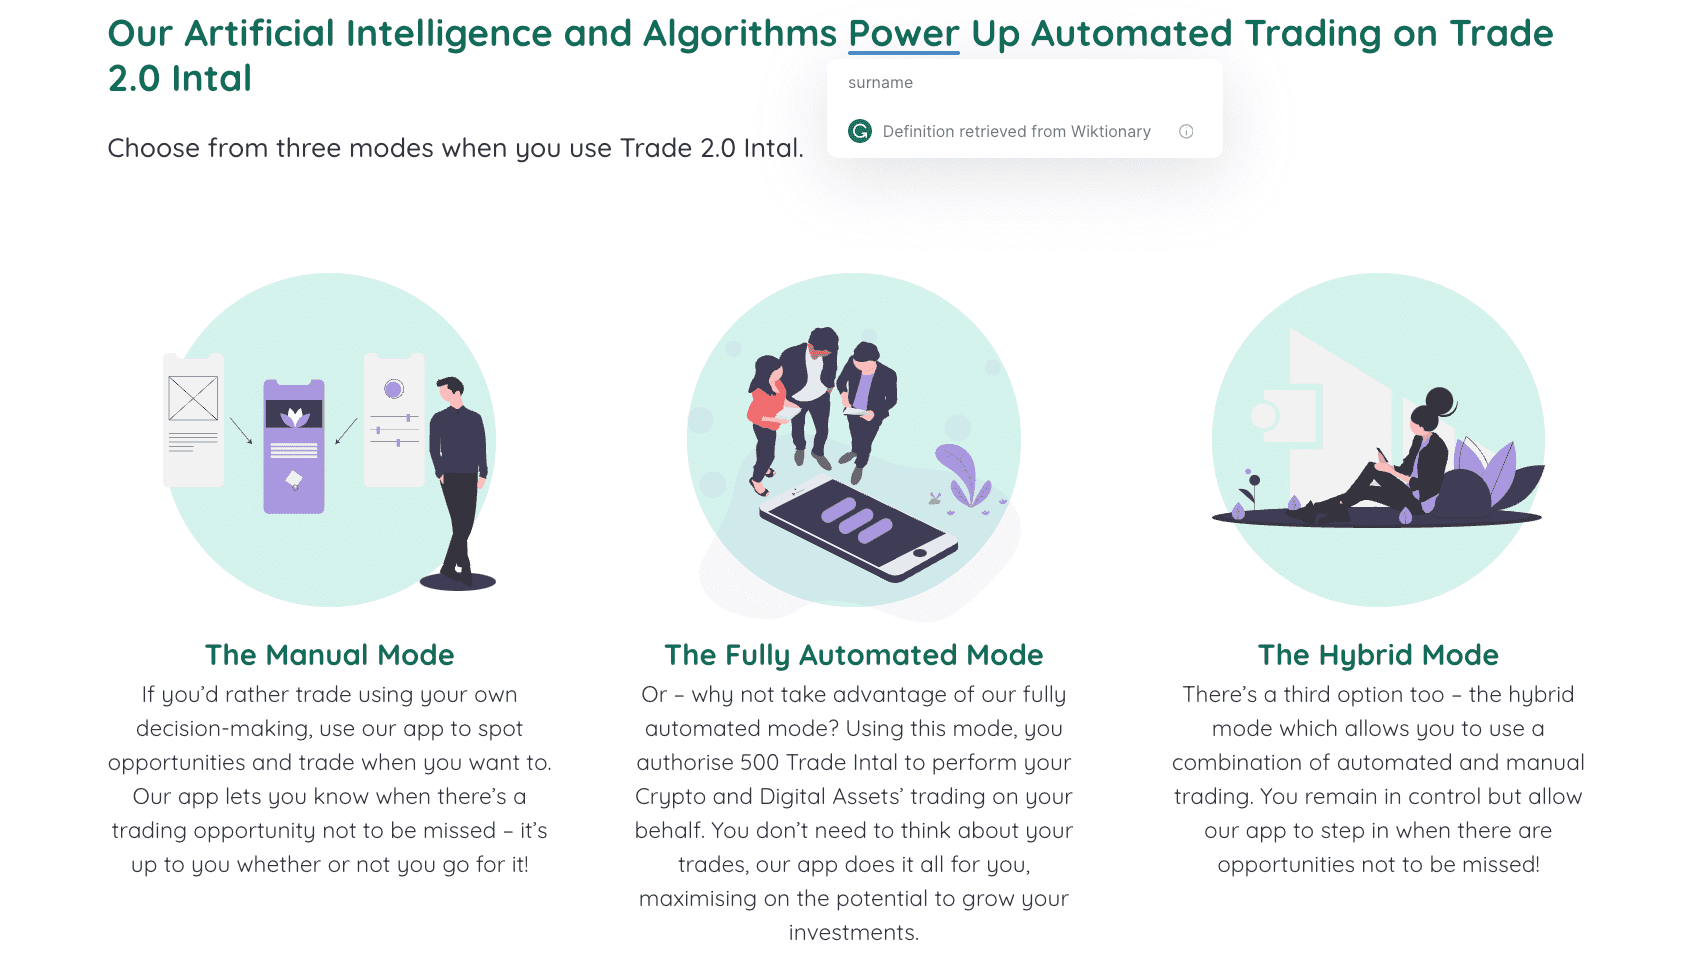 Mūsu mākslīgais intelekts un algoritmi aktivizē automatizēto tirdzniecību ar Trade 2.0 Intal  